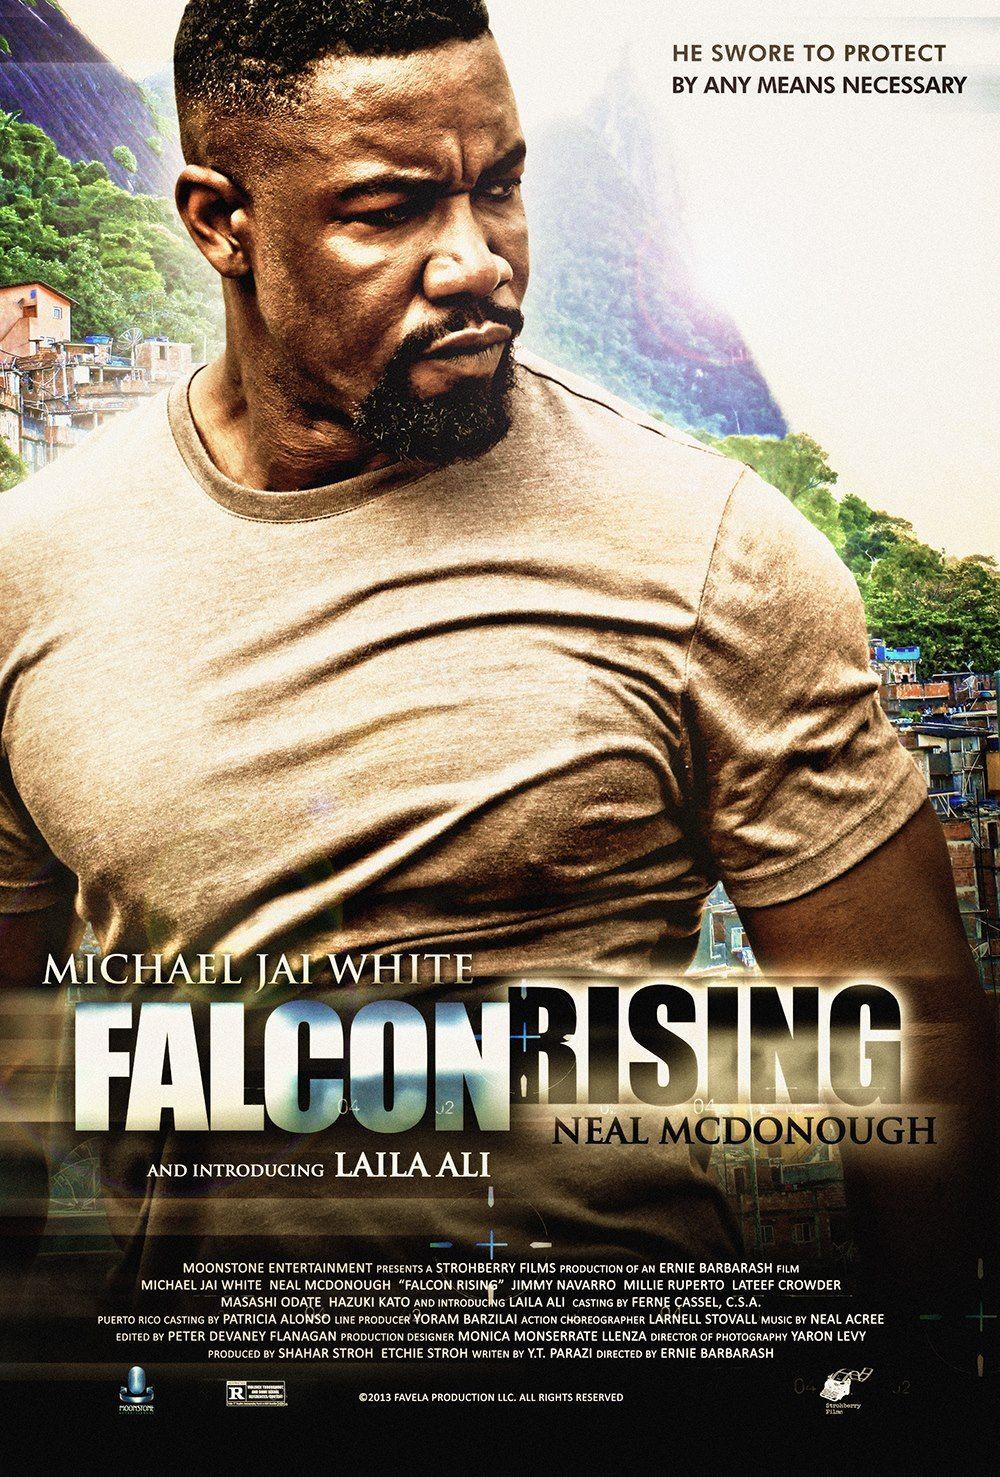 Falcon Rising wallpaper, Movie, HQ Falcon Rising pictureK